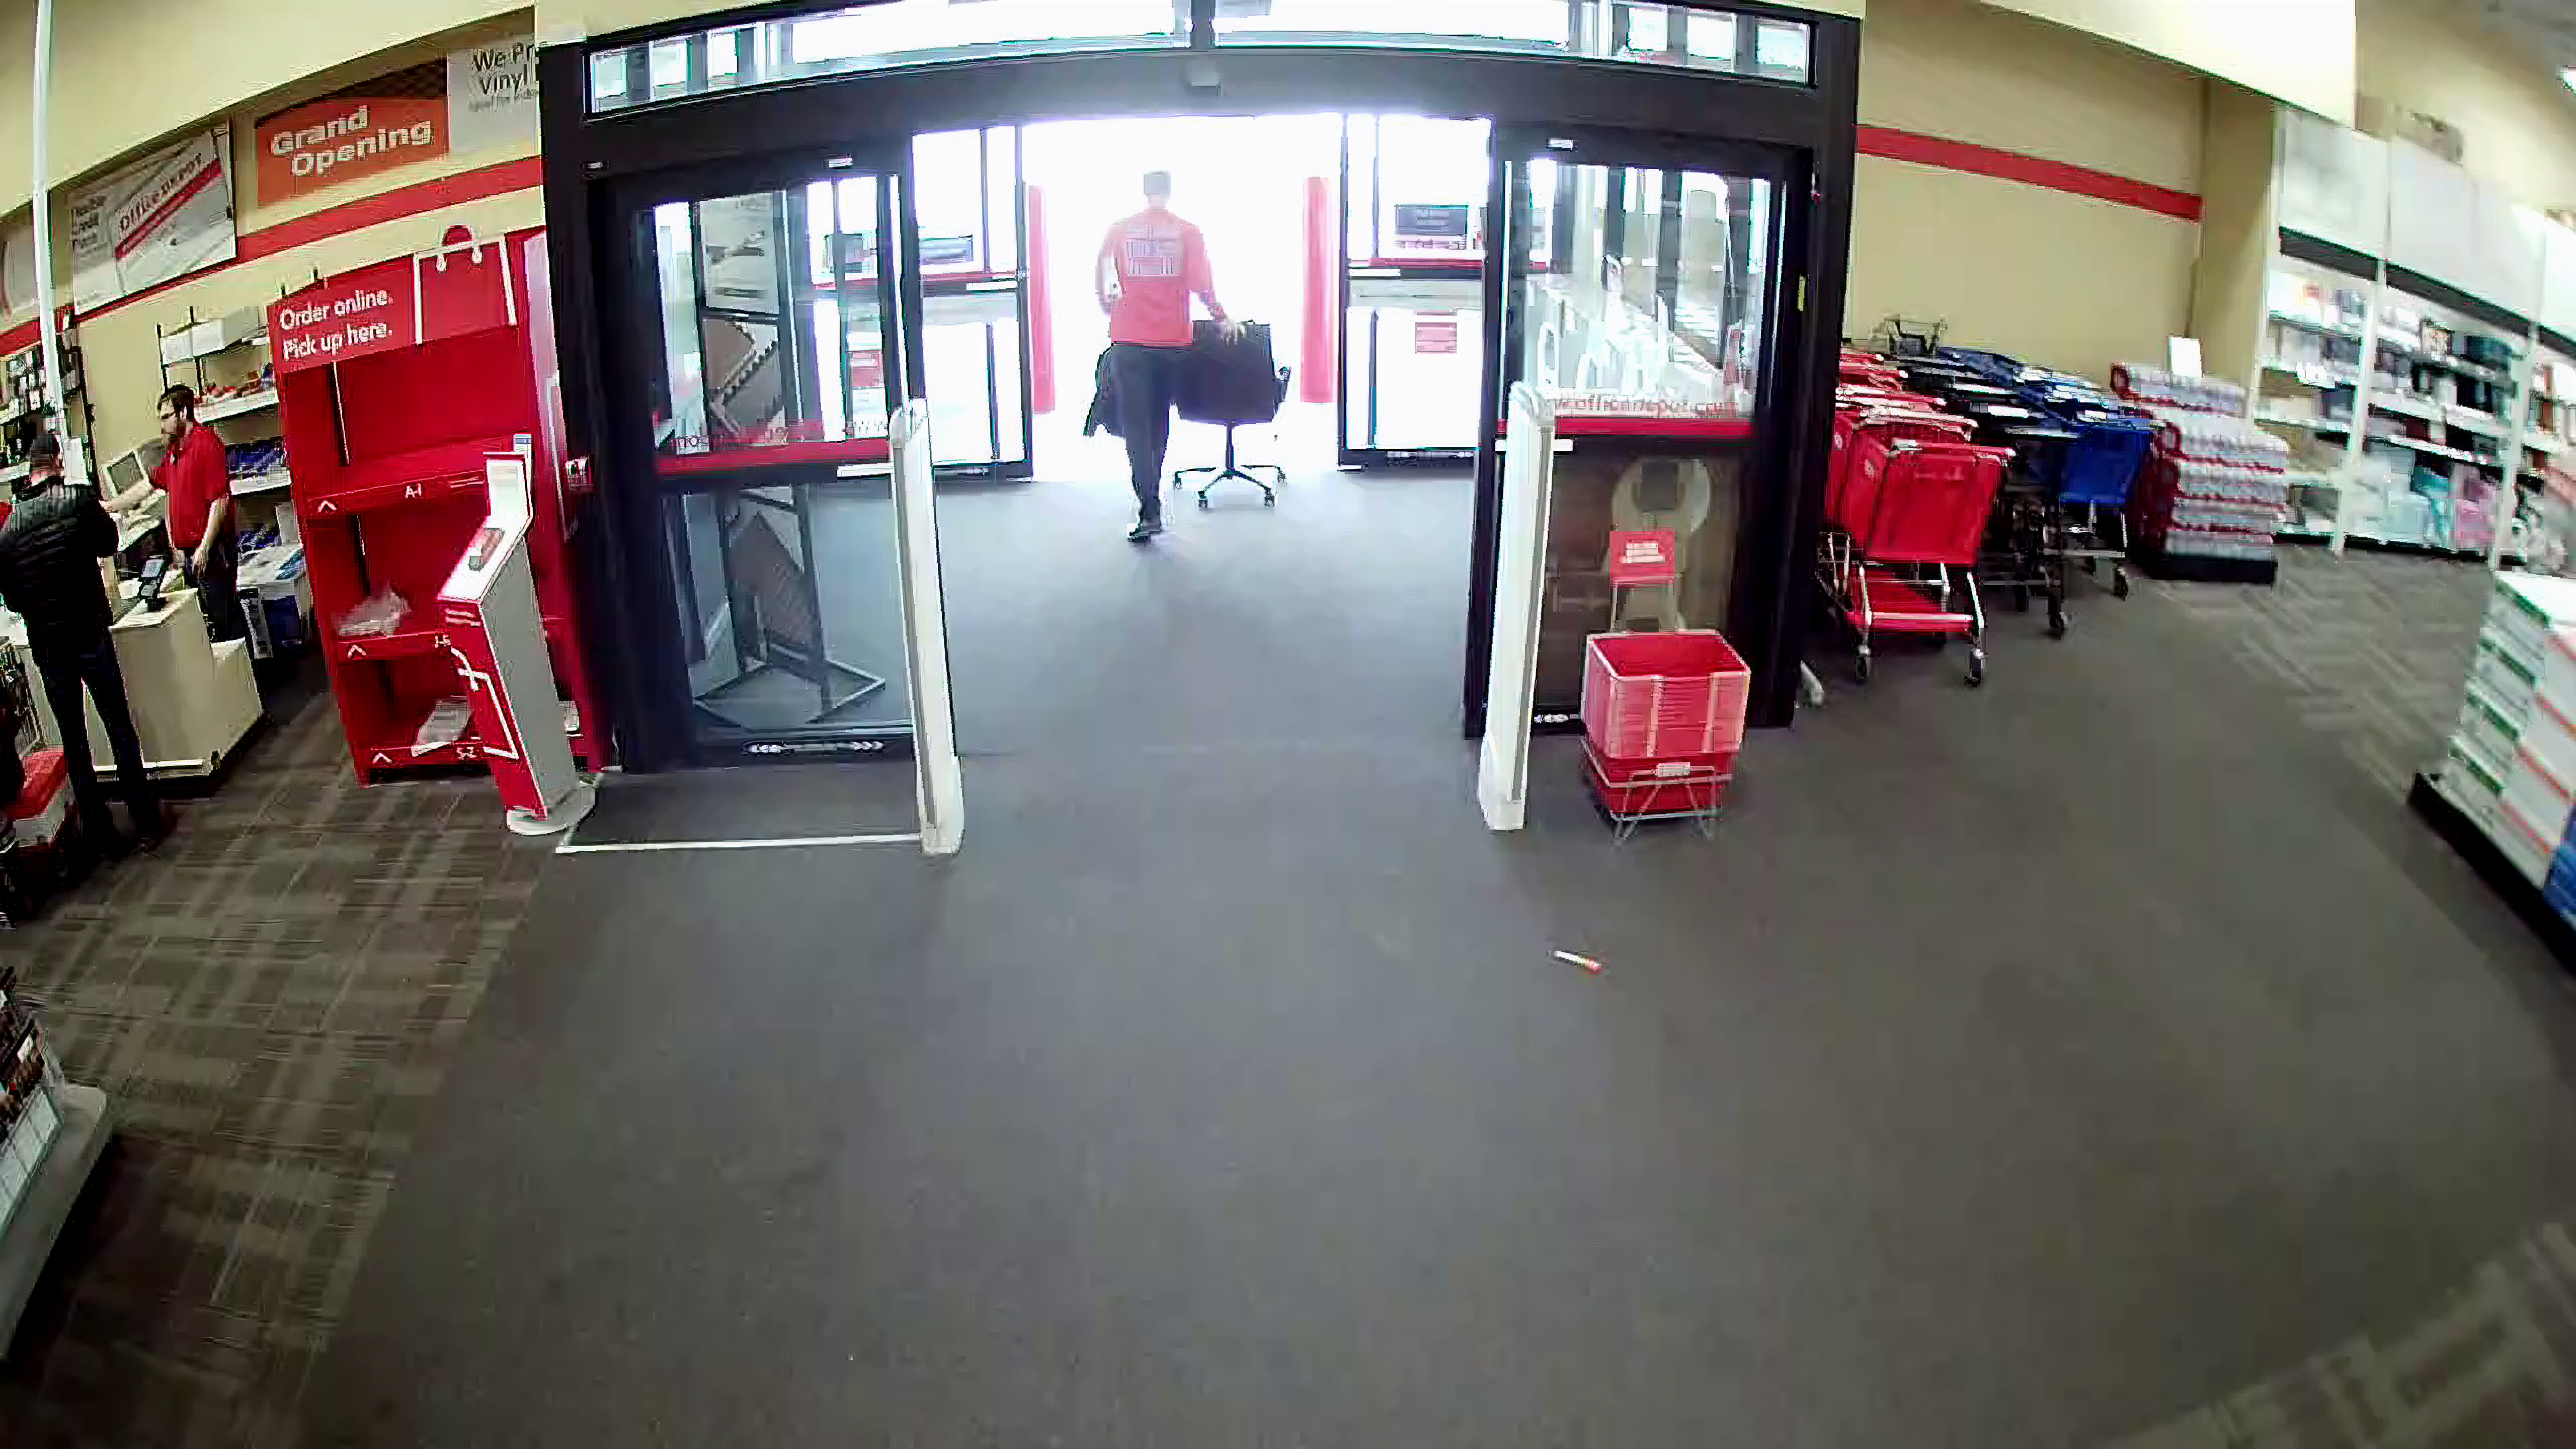 Tim Eyman steals a chair from Office Depot